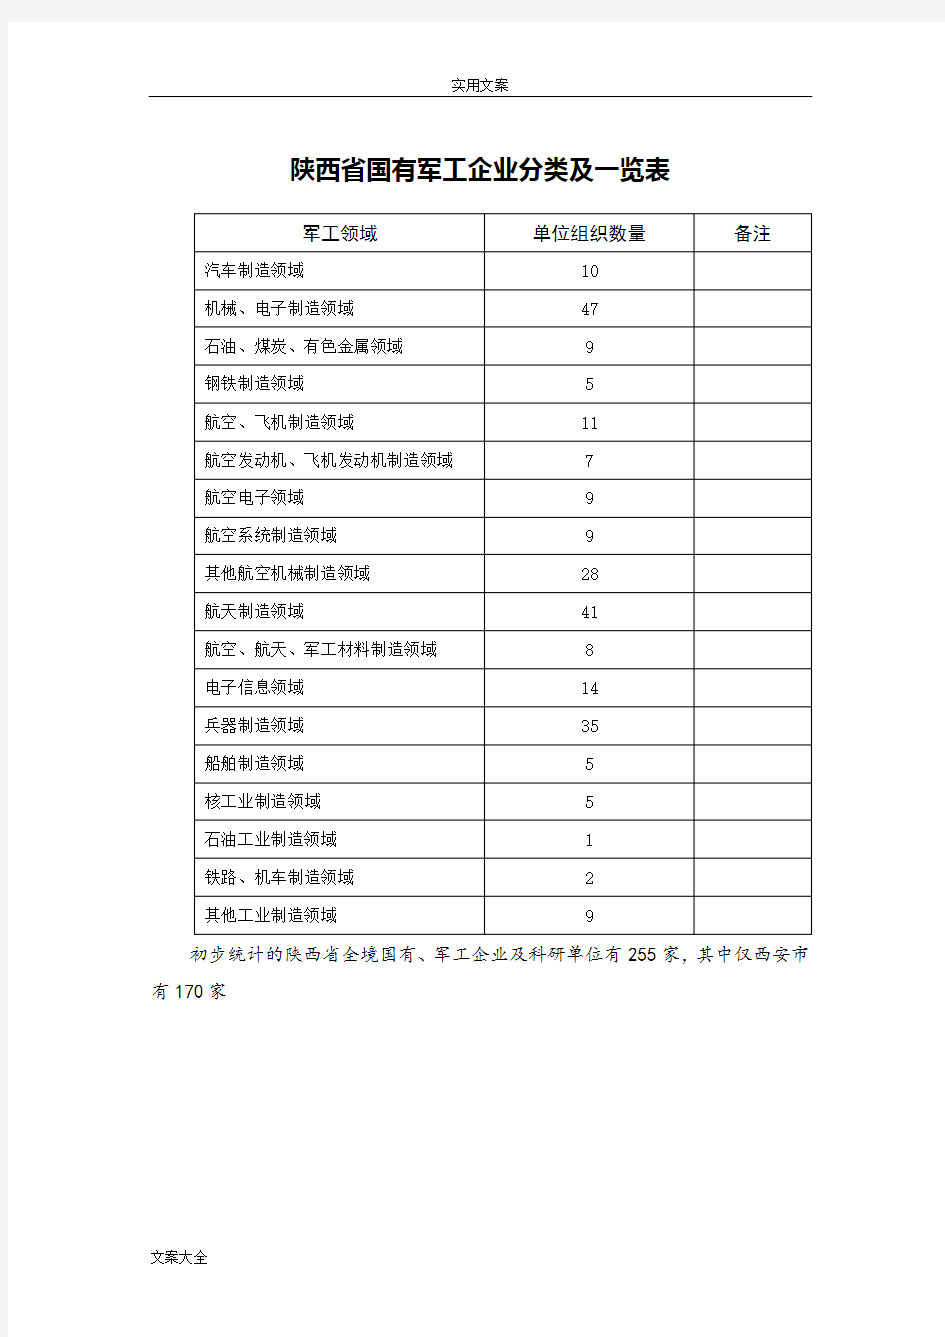 陕西省国有军工企业分类及一览表